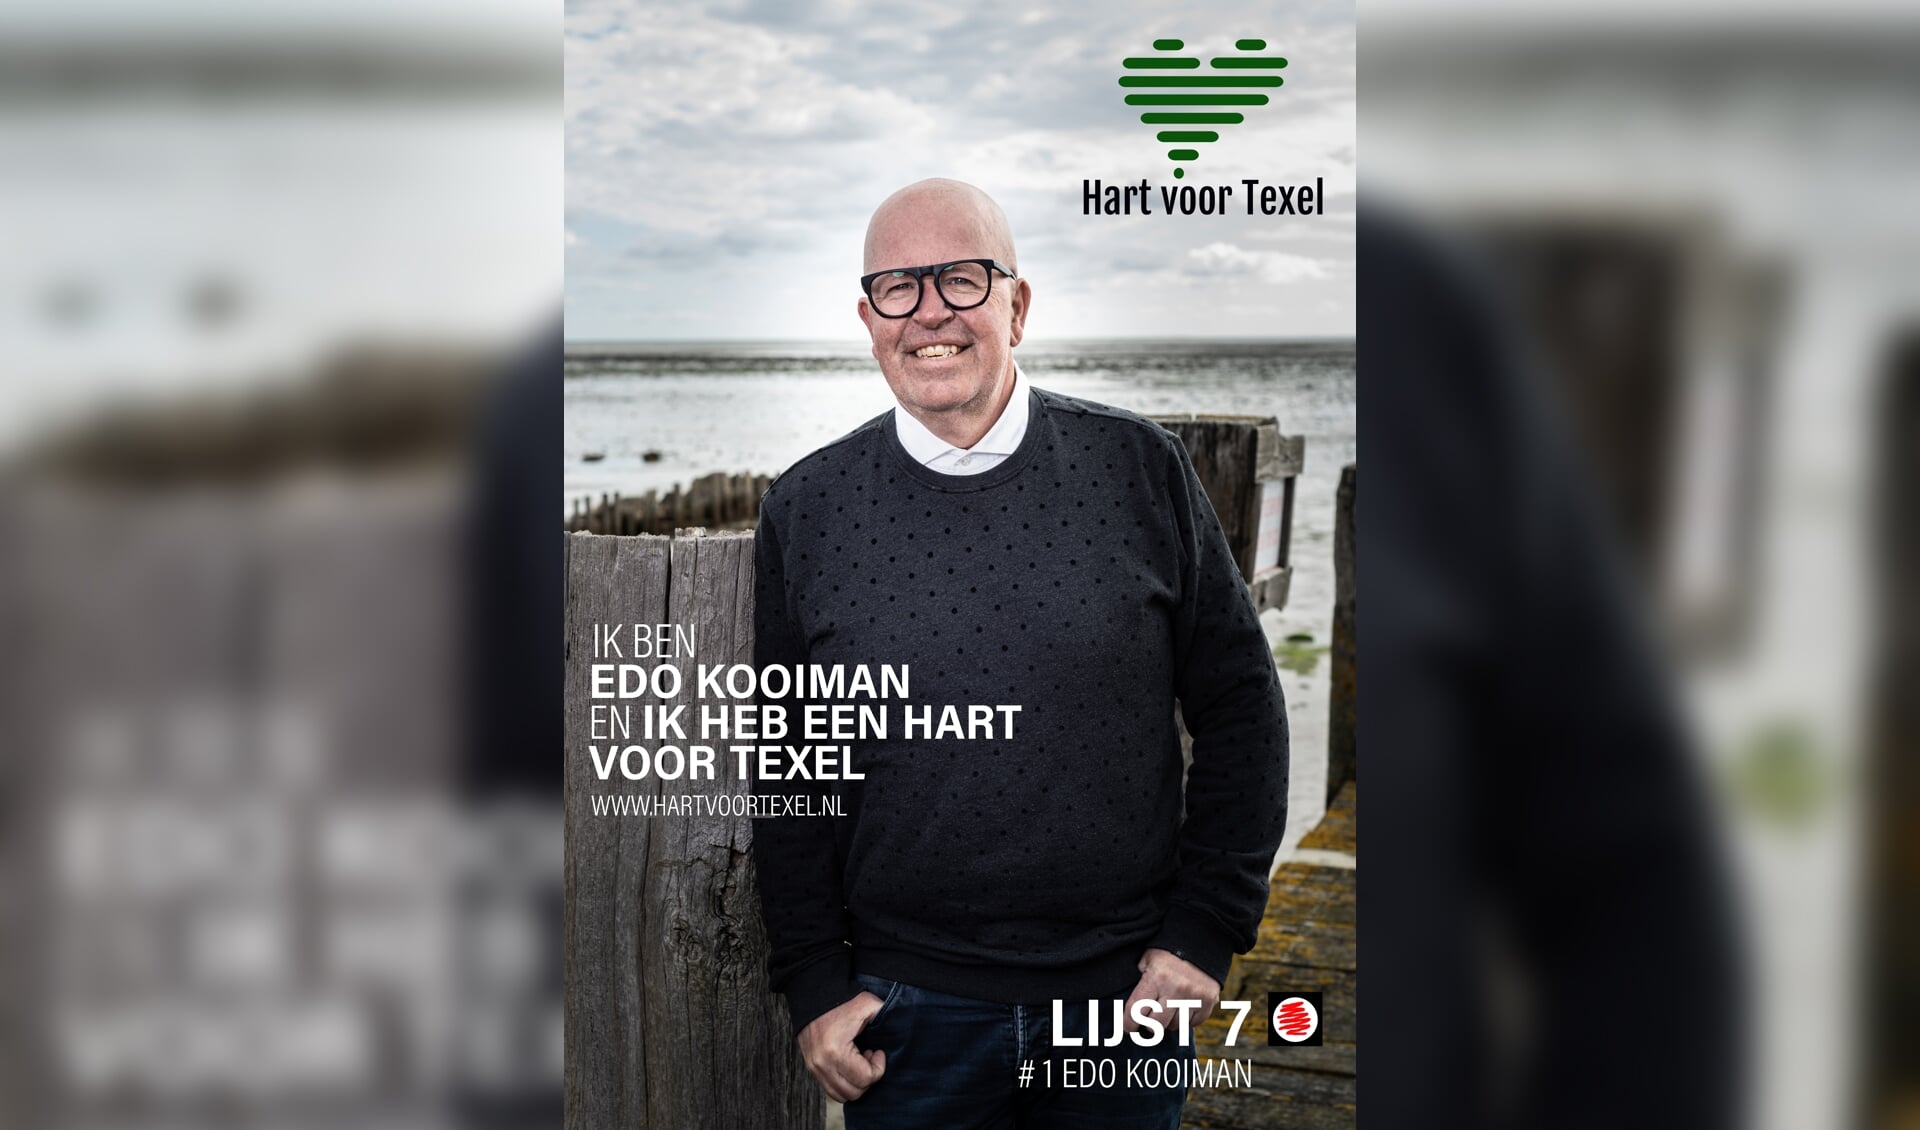 Edo Kooiman, de nummer 1 op de lijst van Hart voor Texel